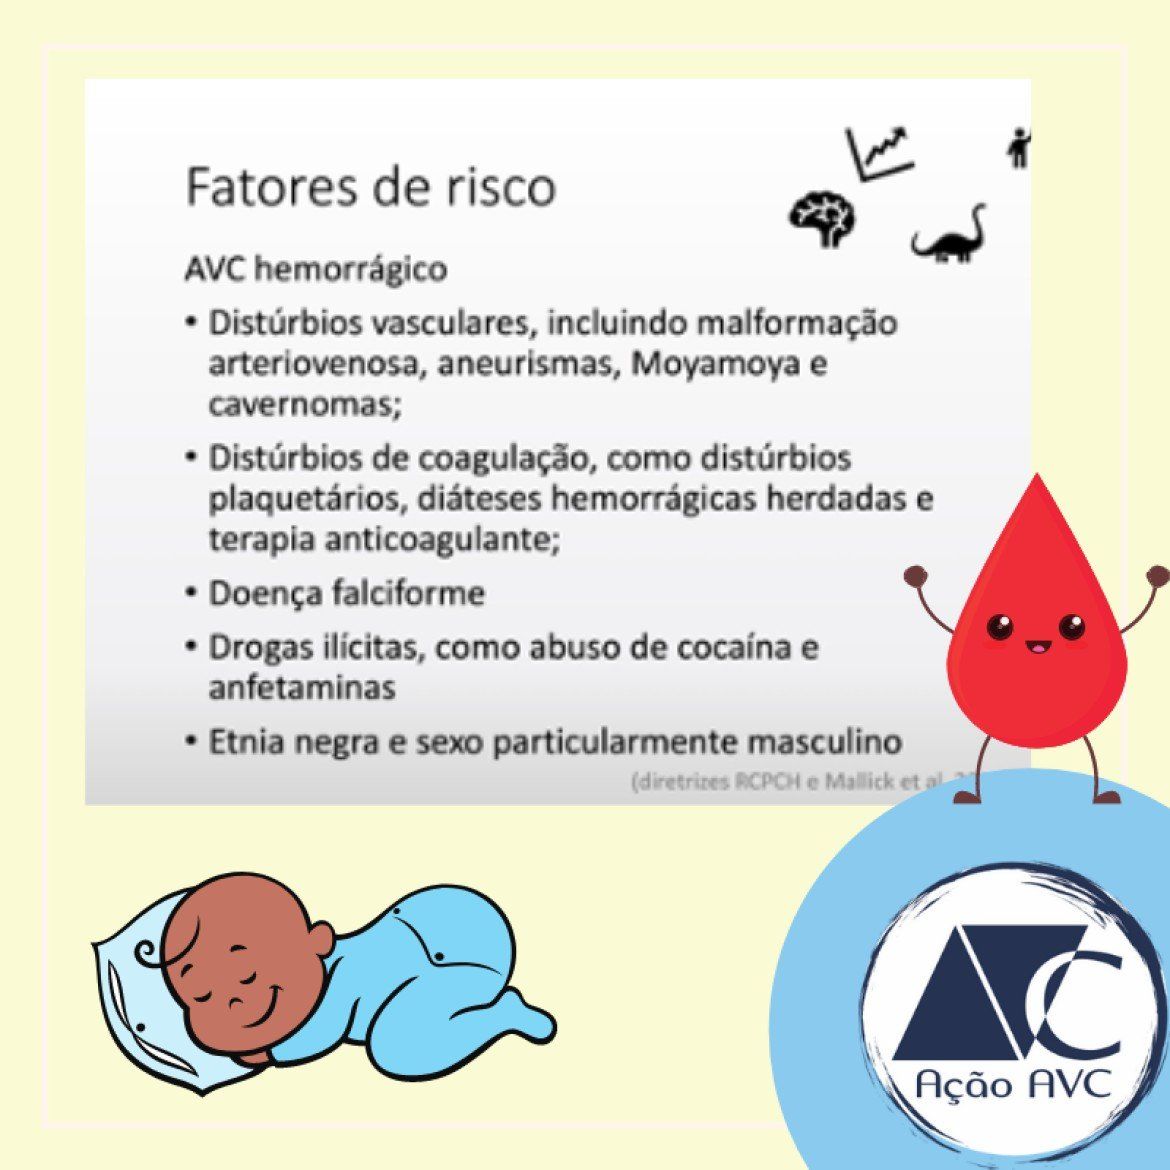 Fatores de risco AVC hemorrágico nas crianças